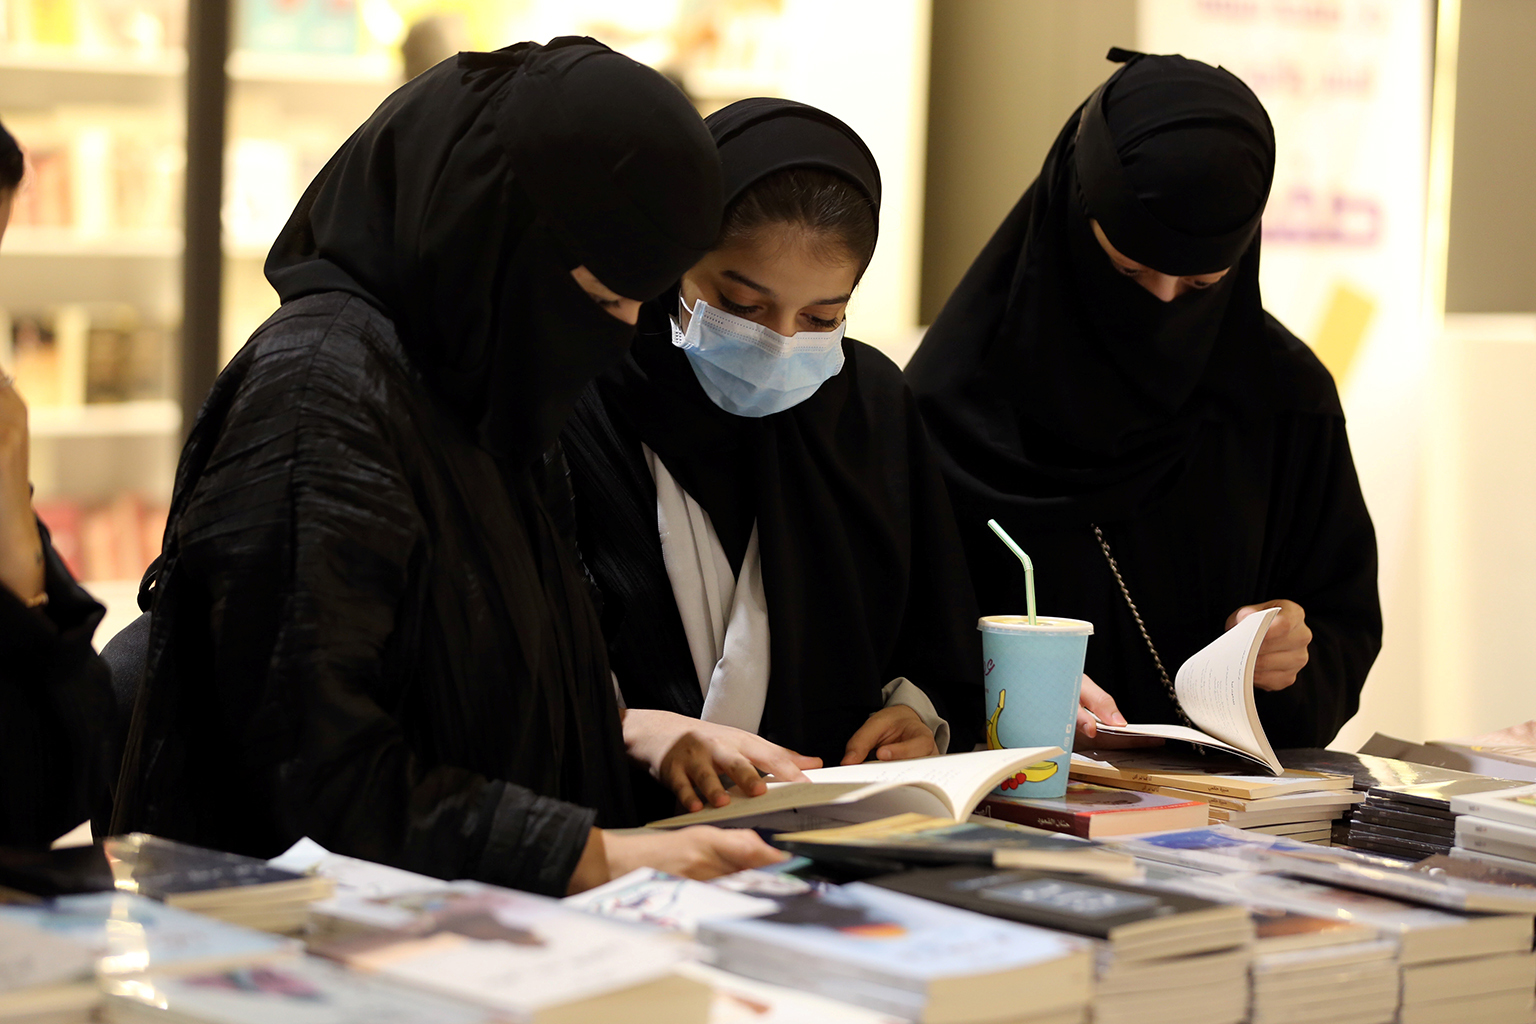 Condenan a una saudí a 34 años de cárcel por escribir tuits sobre los derechos de las mujeres en ese país